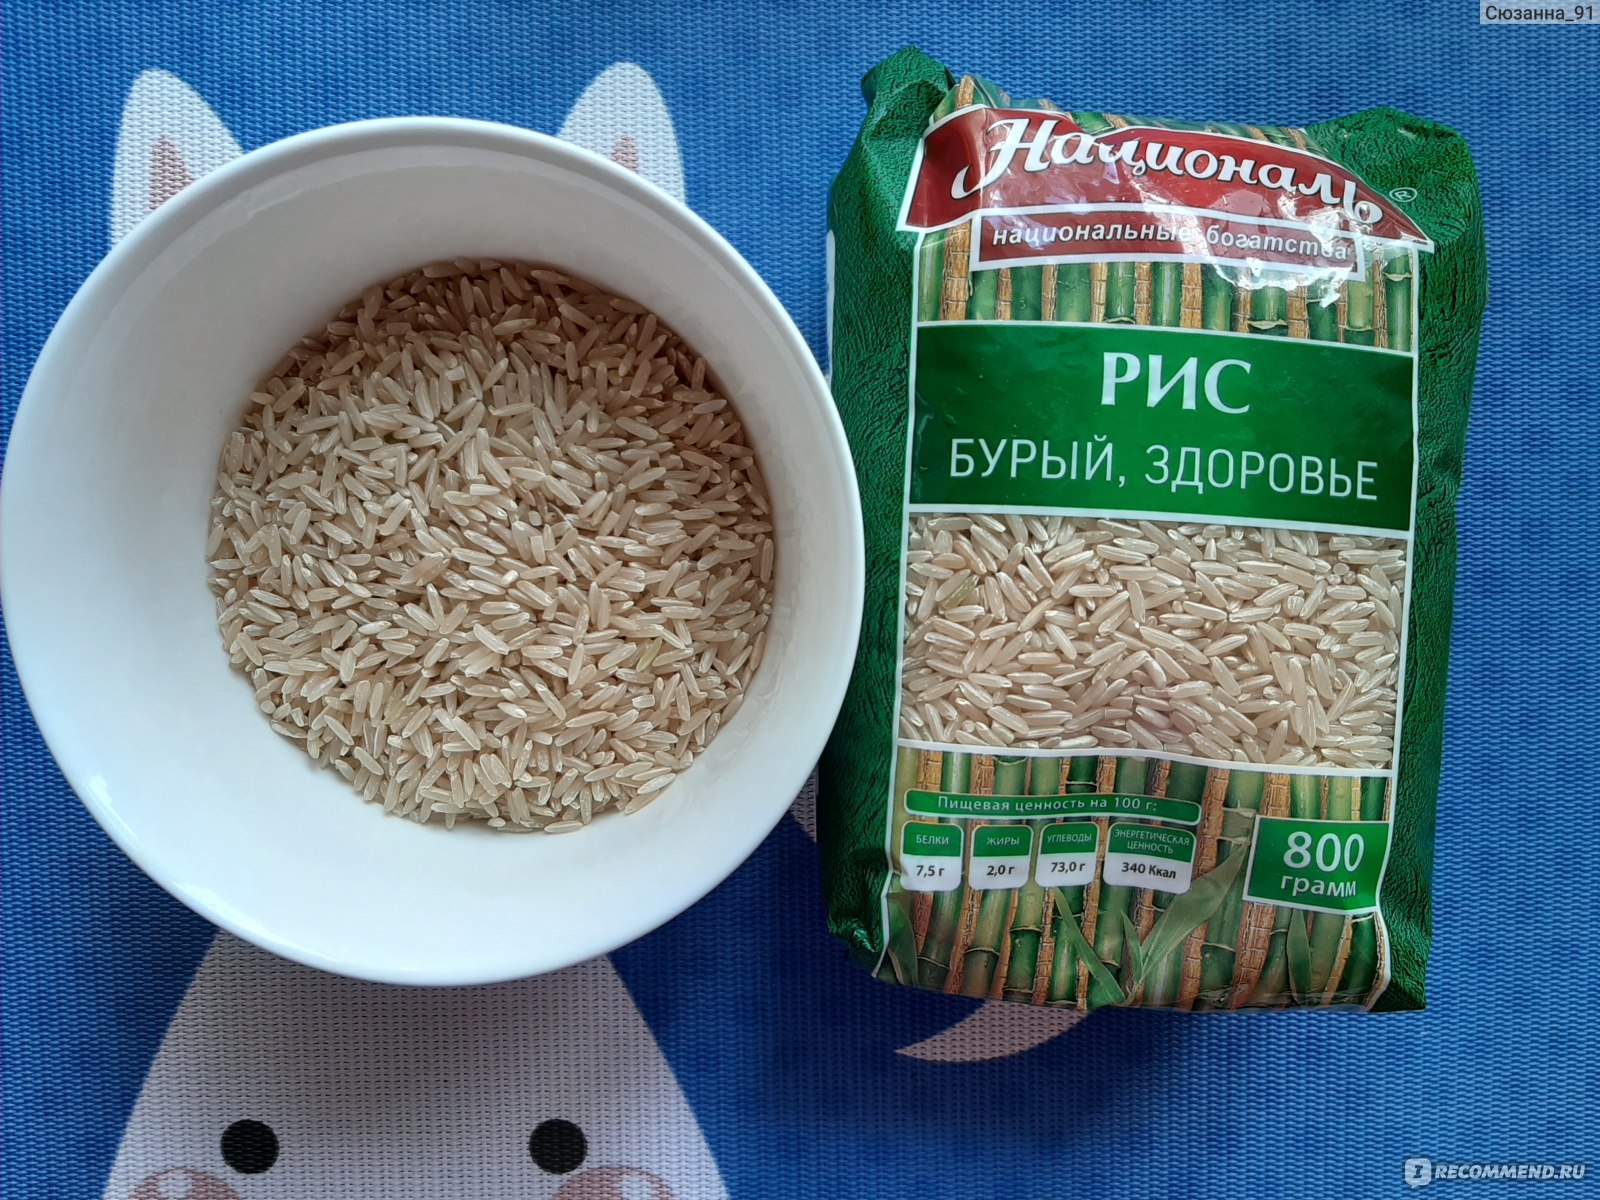 Рис и бурый рис разница. Бурый рис Националь. Рис бурый нешлифованный Националь. Рис бурый Националь здоровье, длиннозерный, нешлифованный, 800 г. Рис бурый длиннозерный.